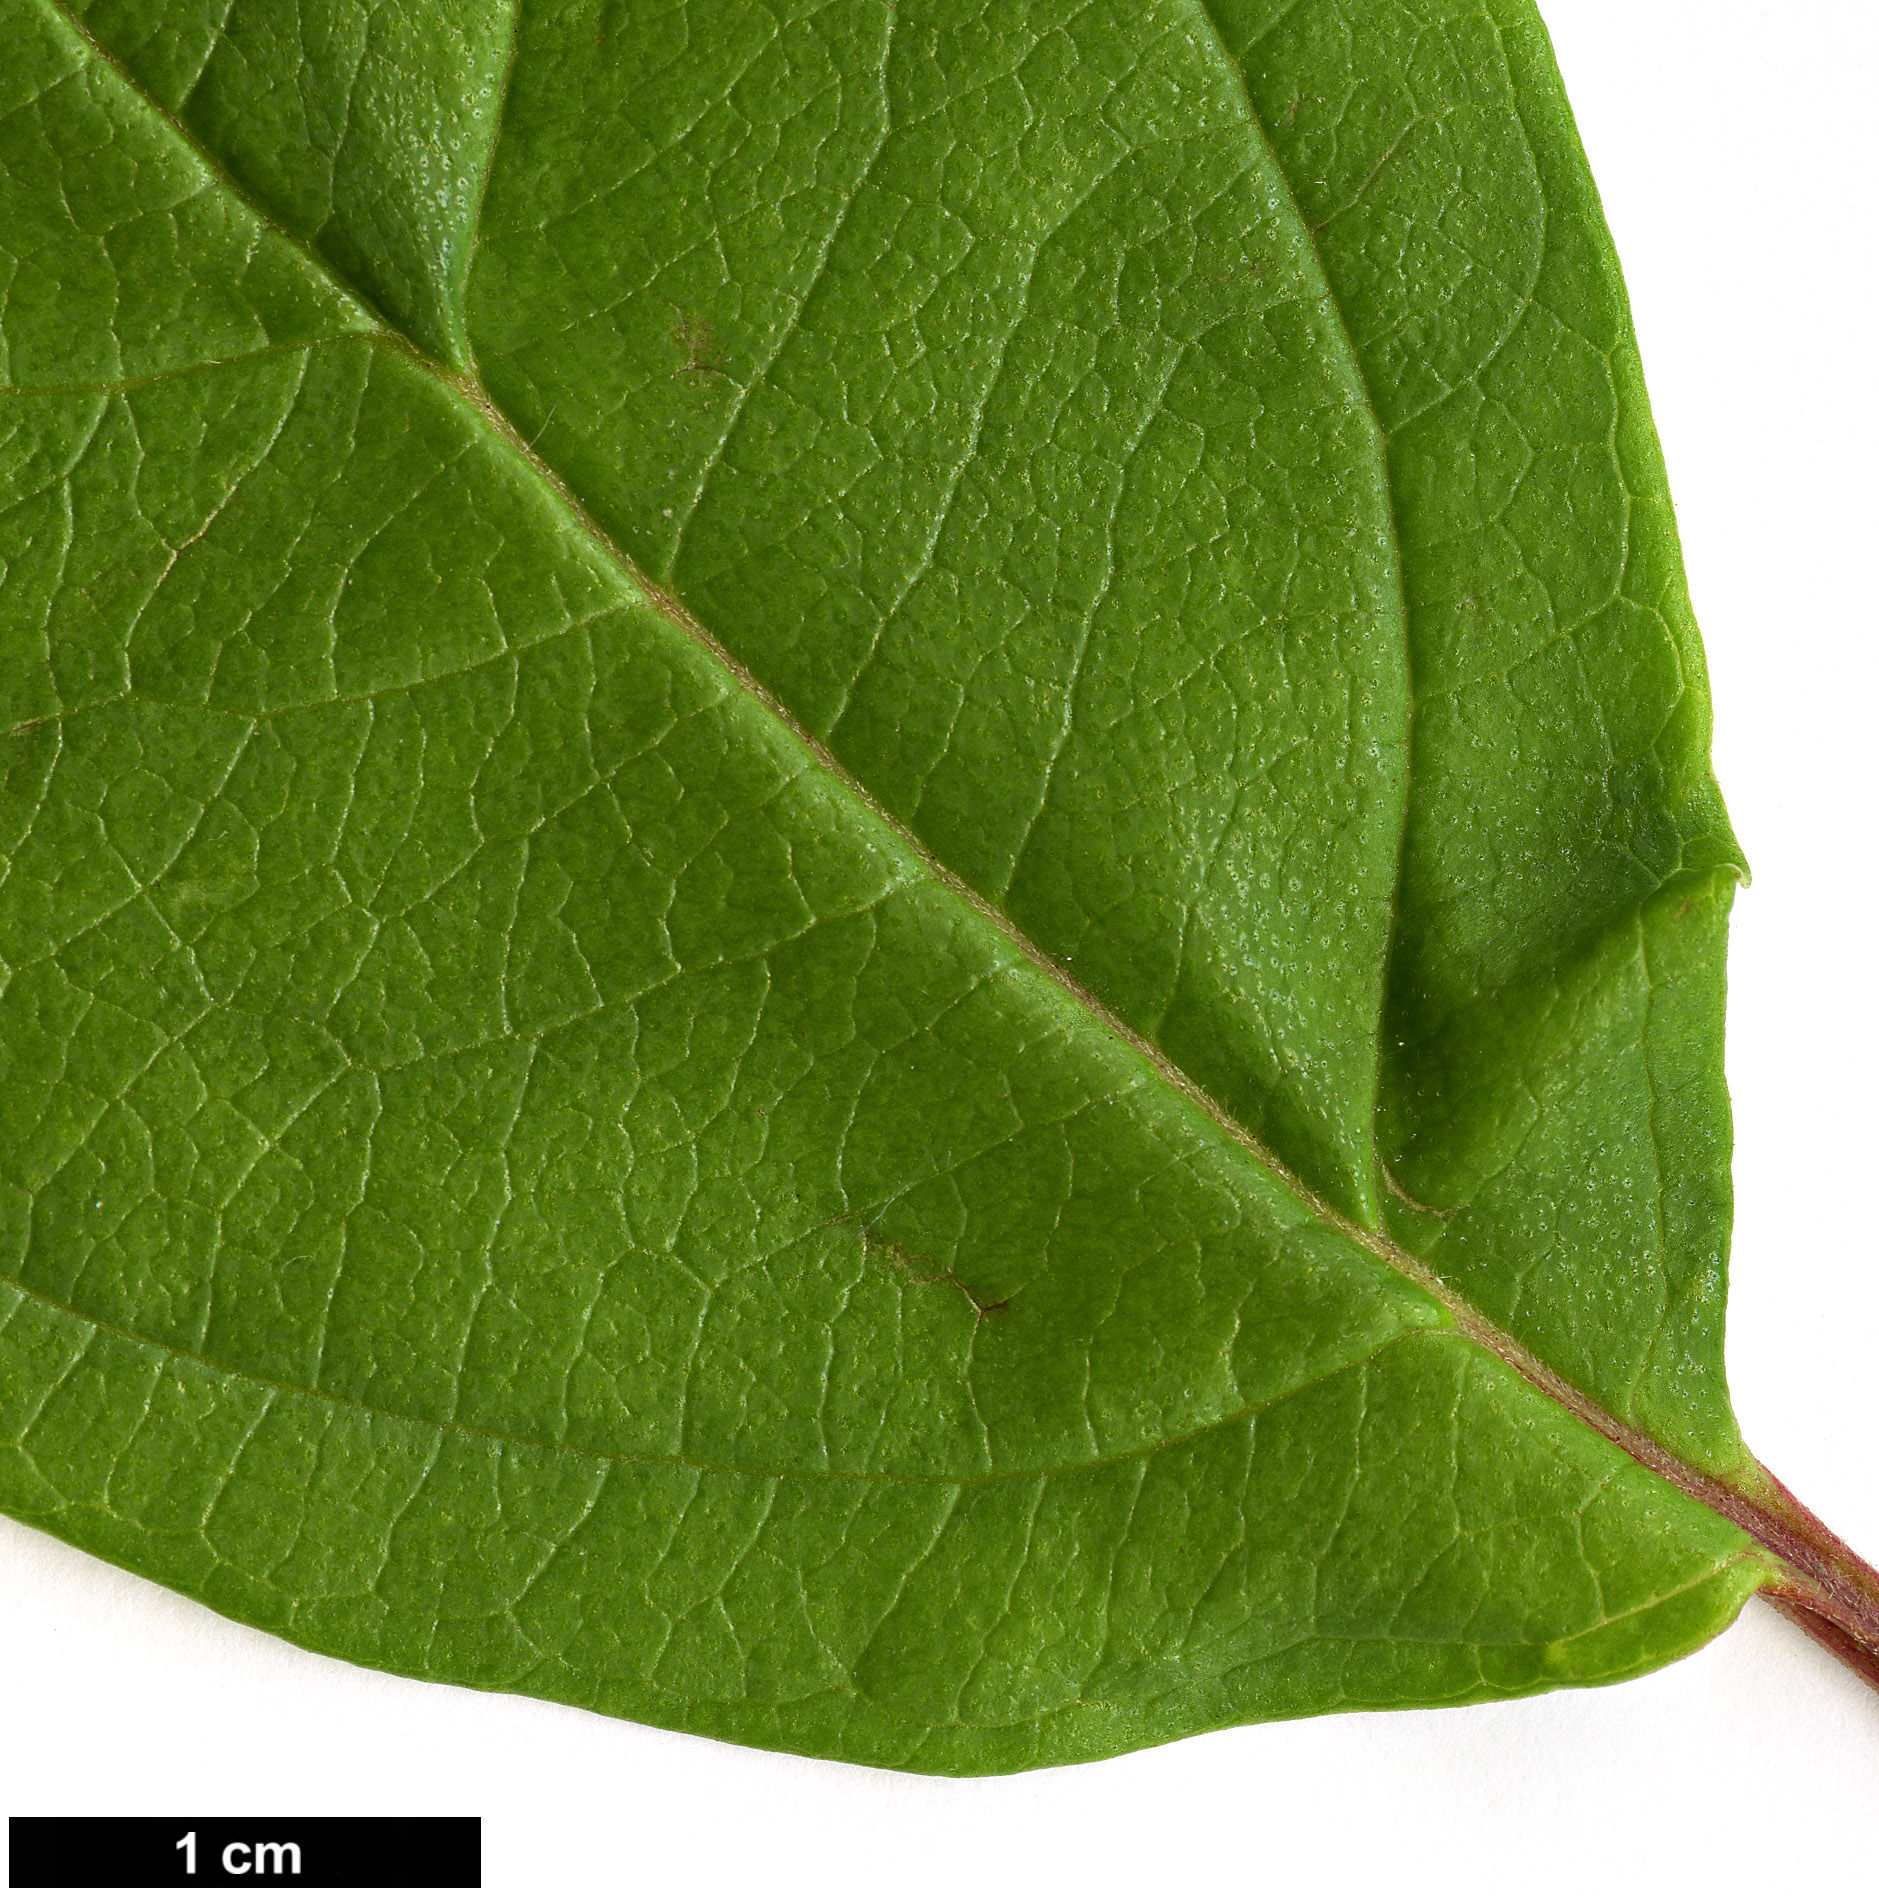 High resolution image: Family: Adoxaceae - Genus: Viburnum - Taxon: coriaceum